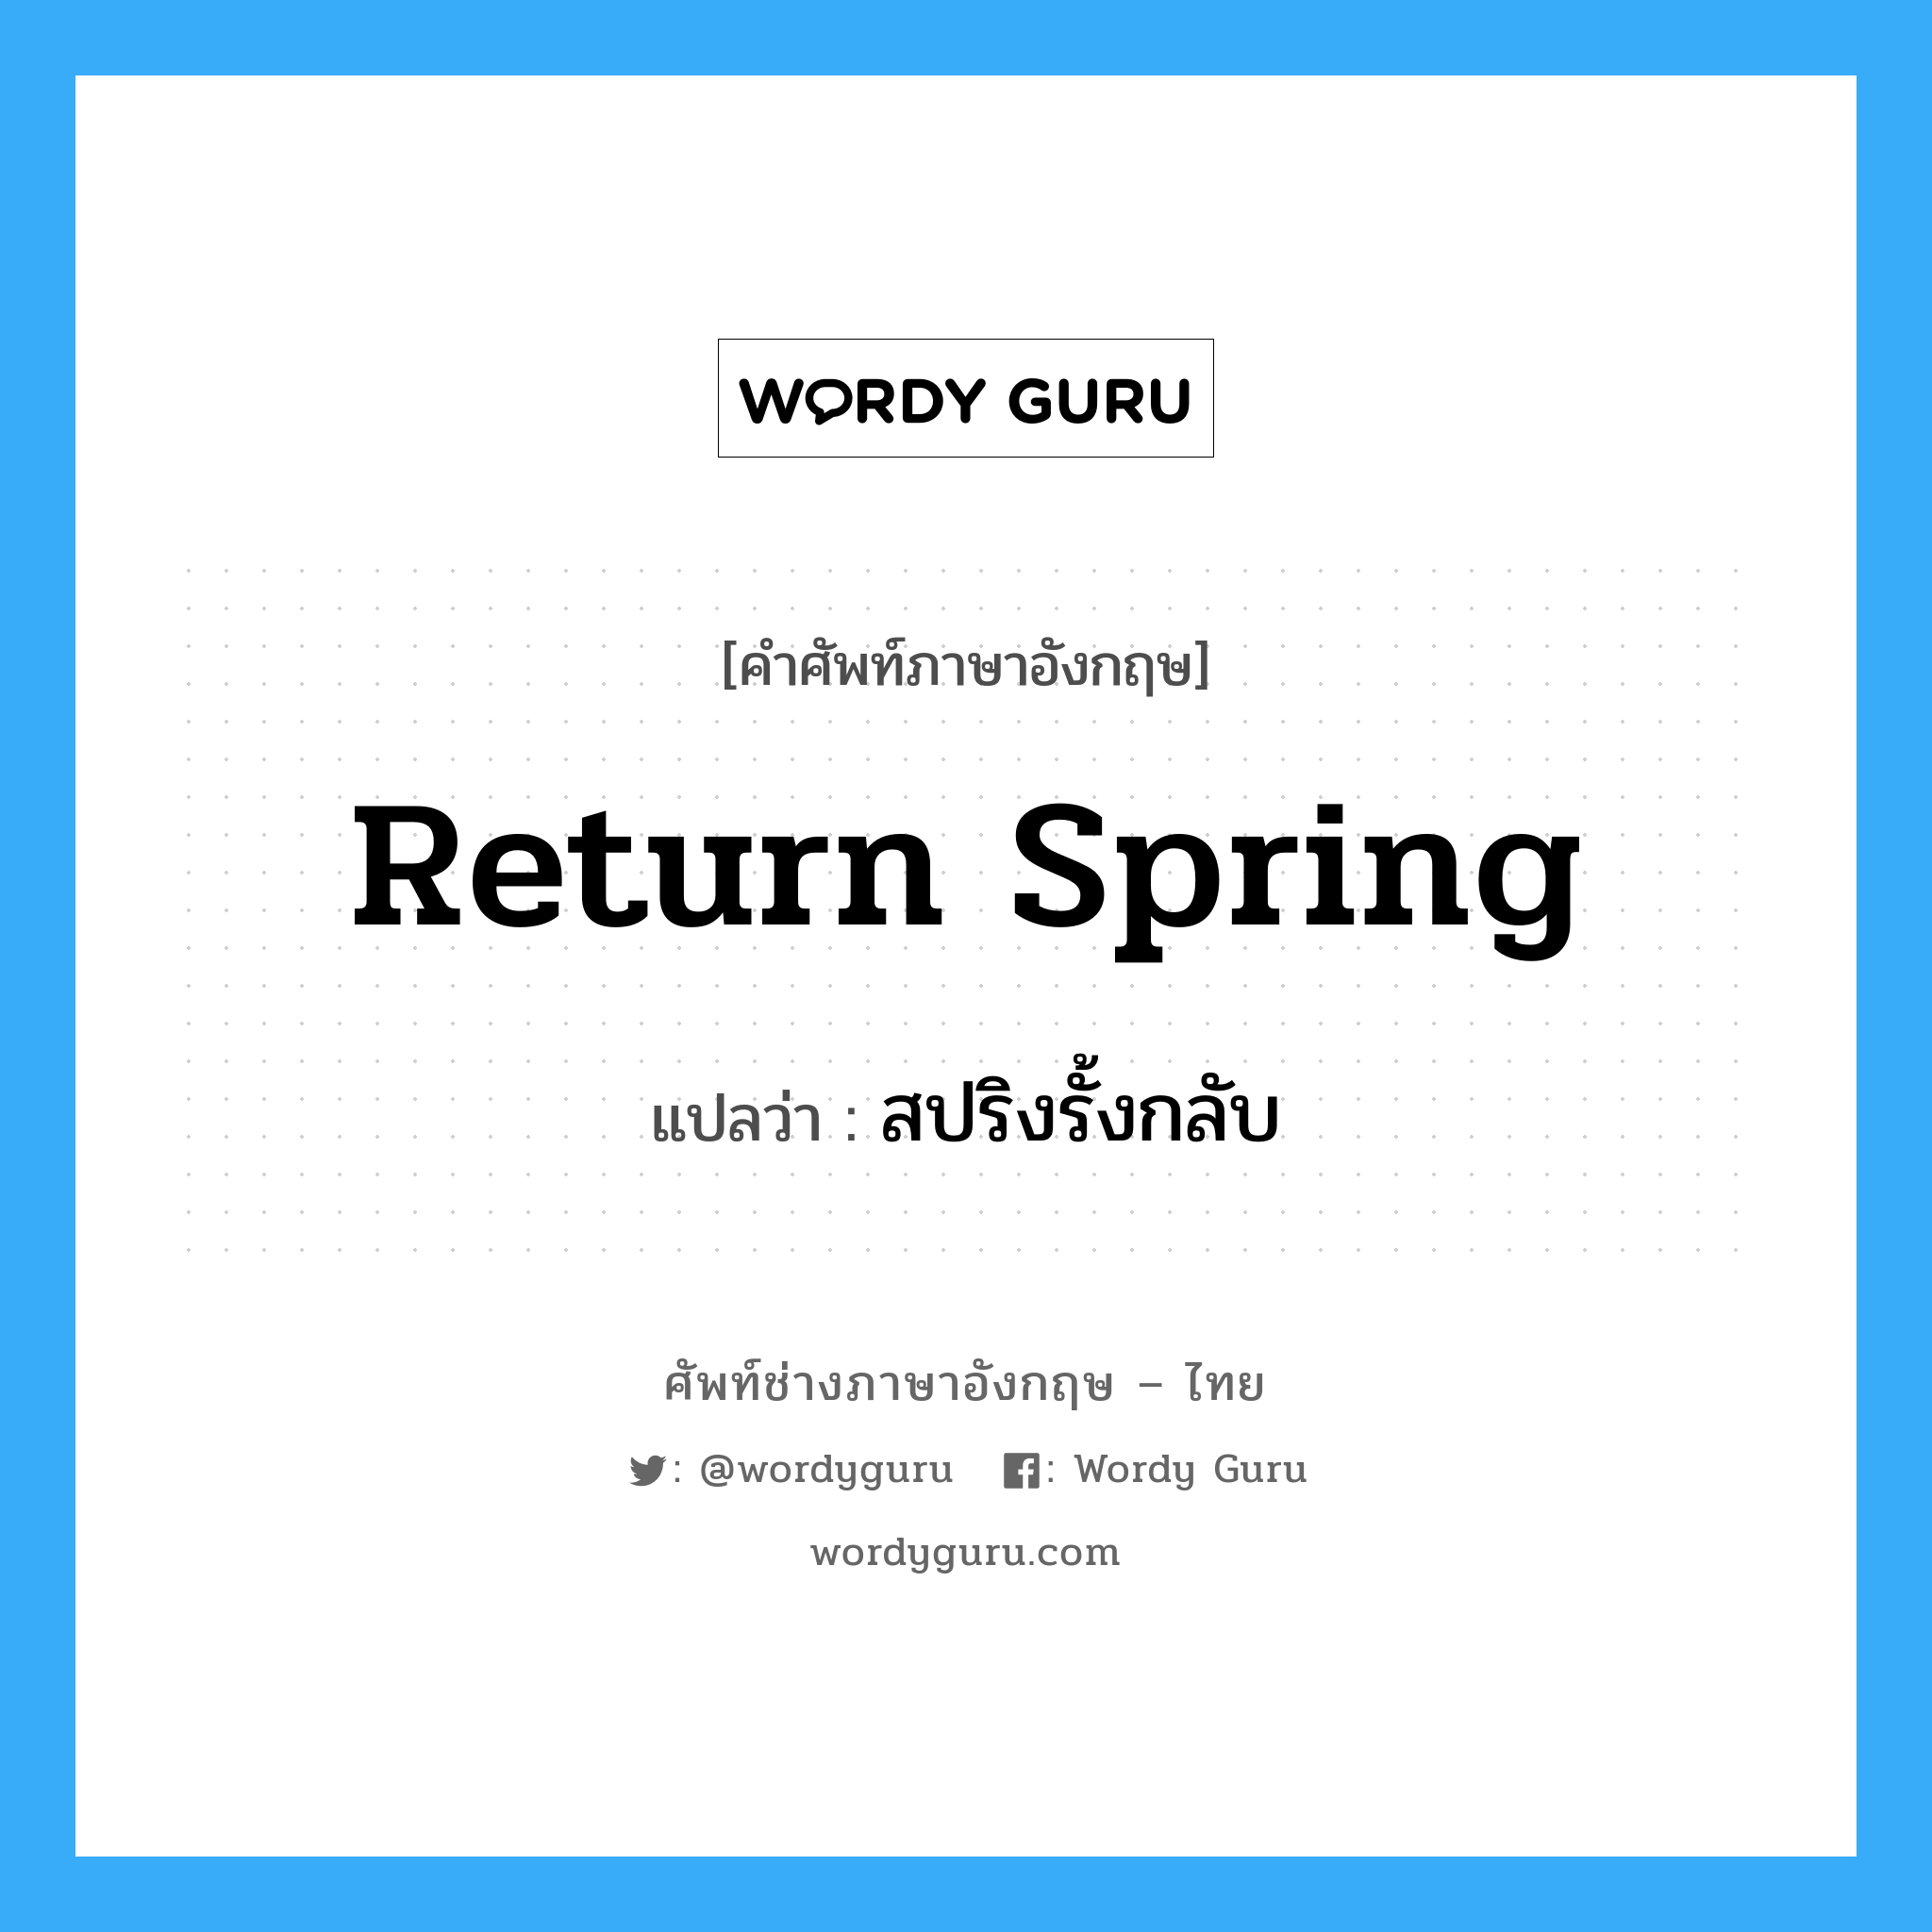 สปริงรั้งกลับ ภาษาอังกฤษ?, คำศัพท์ช่างภาษาอังกฤษ - ไทย สปริงรั้งกลับ คำศัพท์ภาษาอังกฤษ สปริงรั้งกลับ แปลว่า return spring